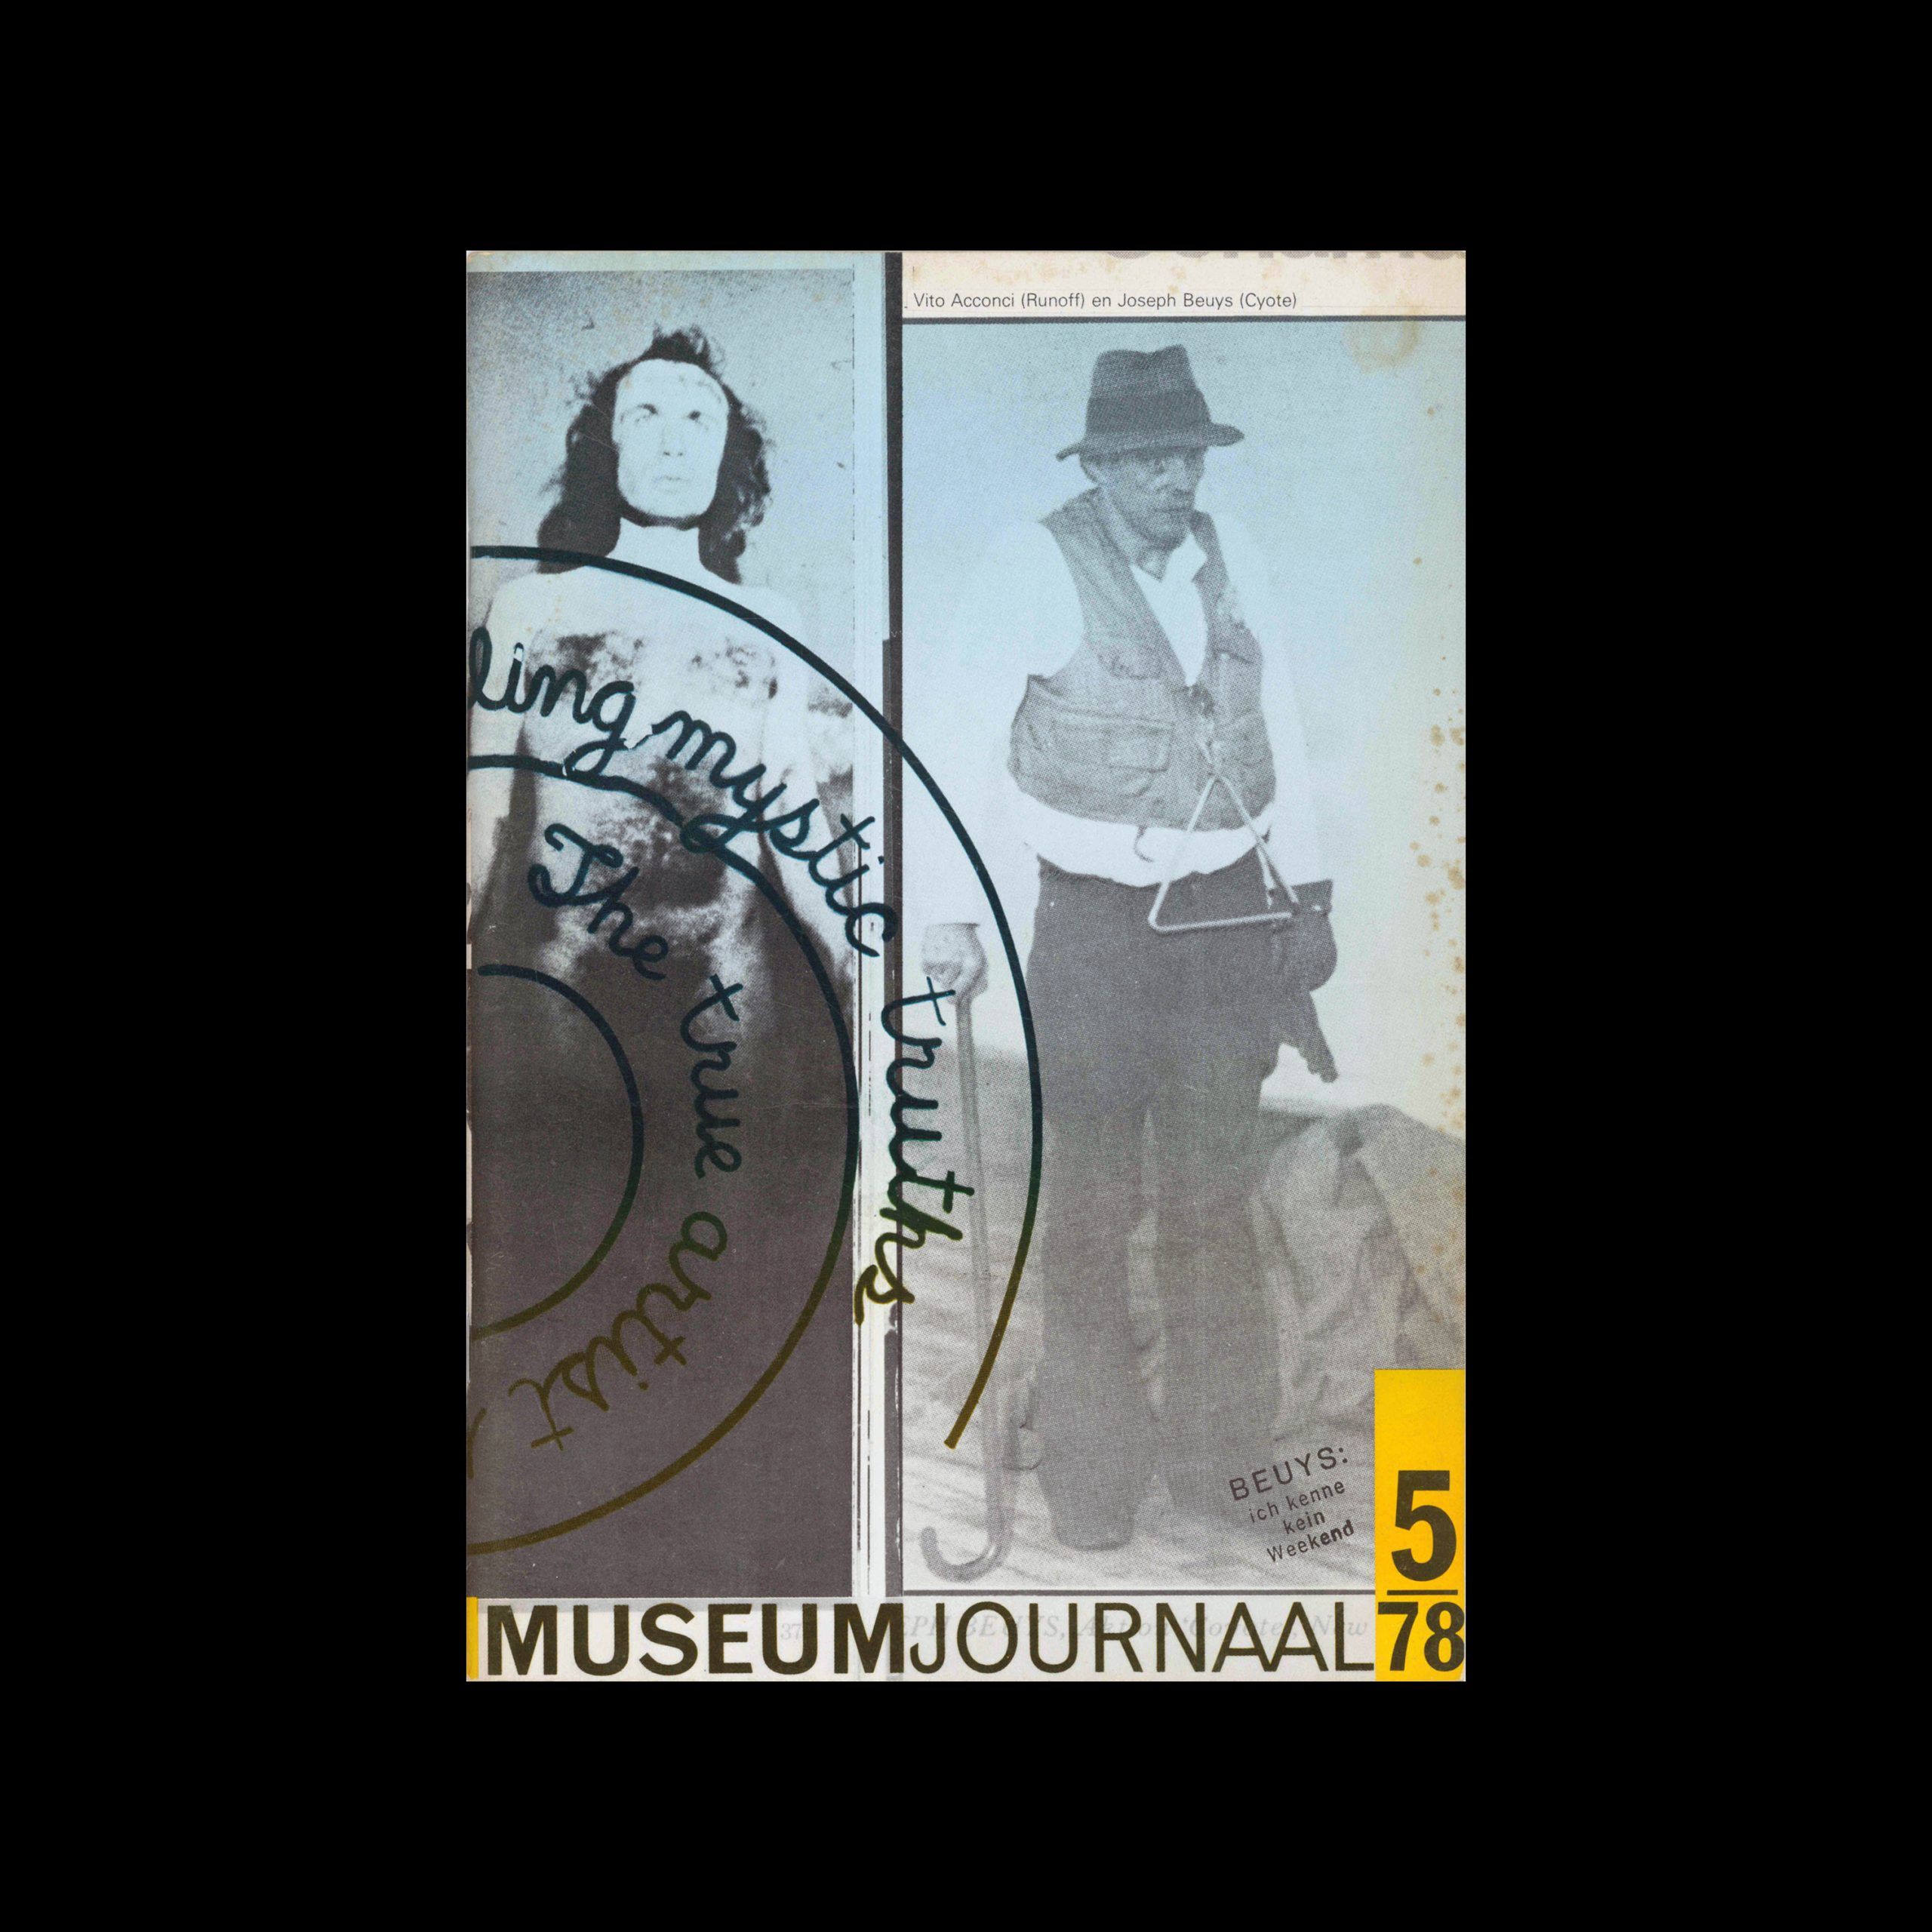 Museumjournaal, Serie 23 no5, 1978. Layout: Frans Evenhuis and Piet van Meiji | Cover: Jan Van Toorn